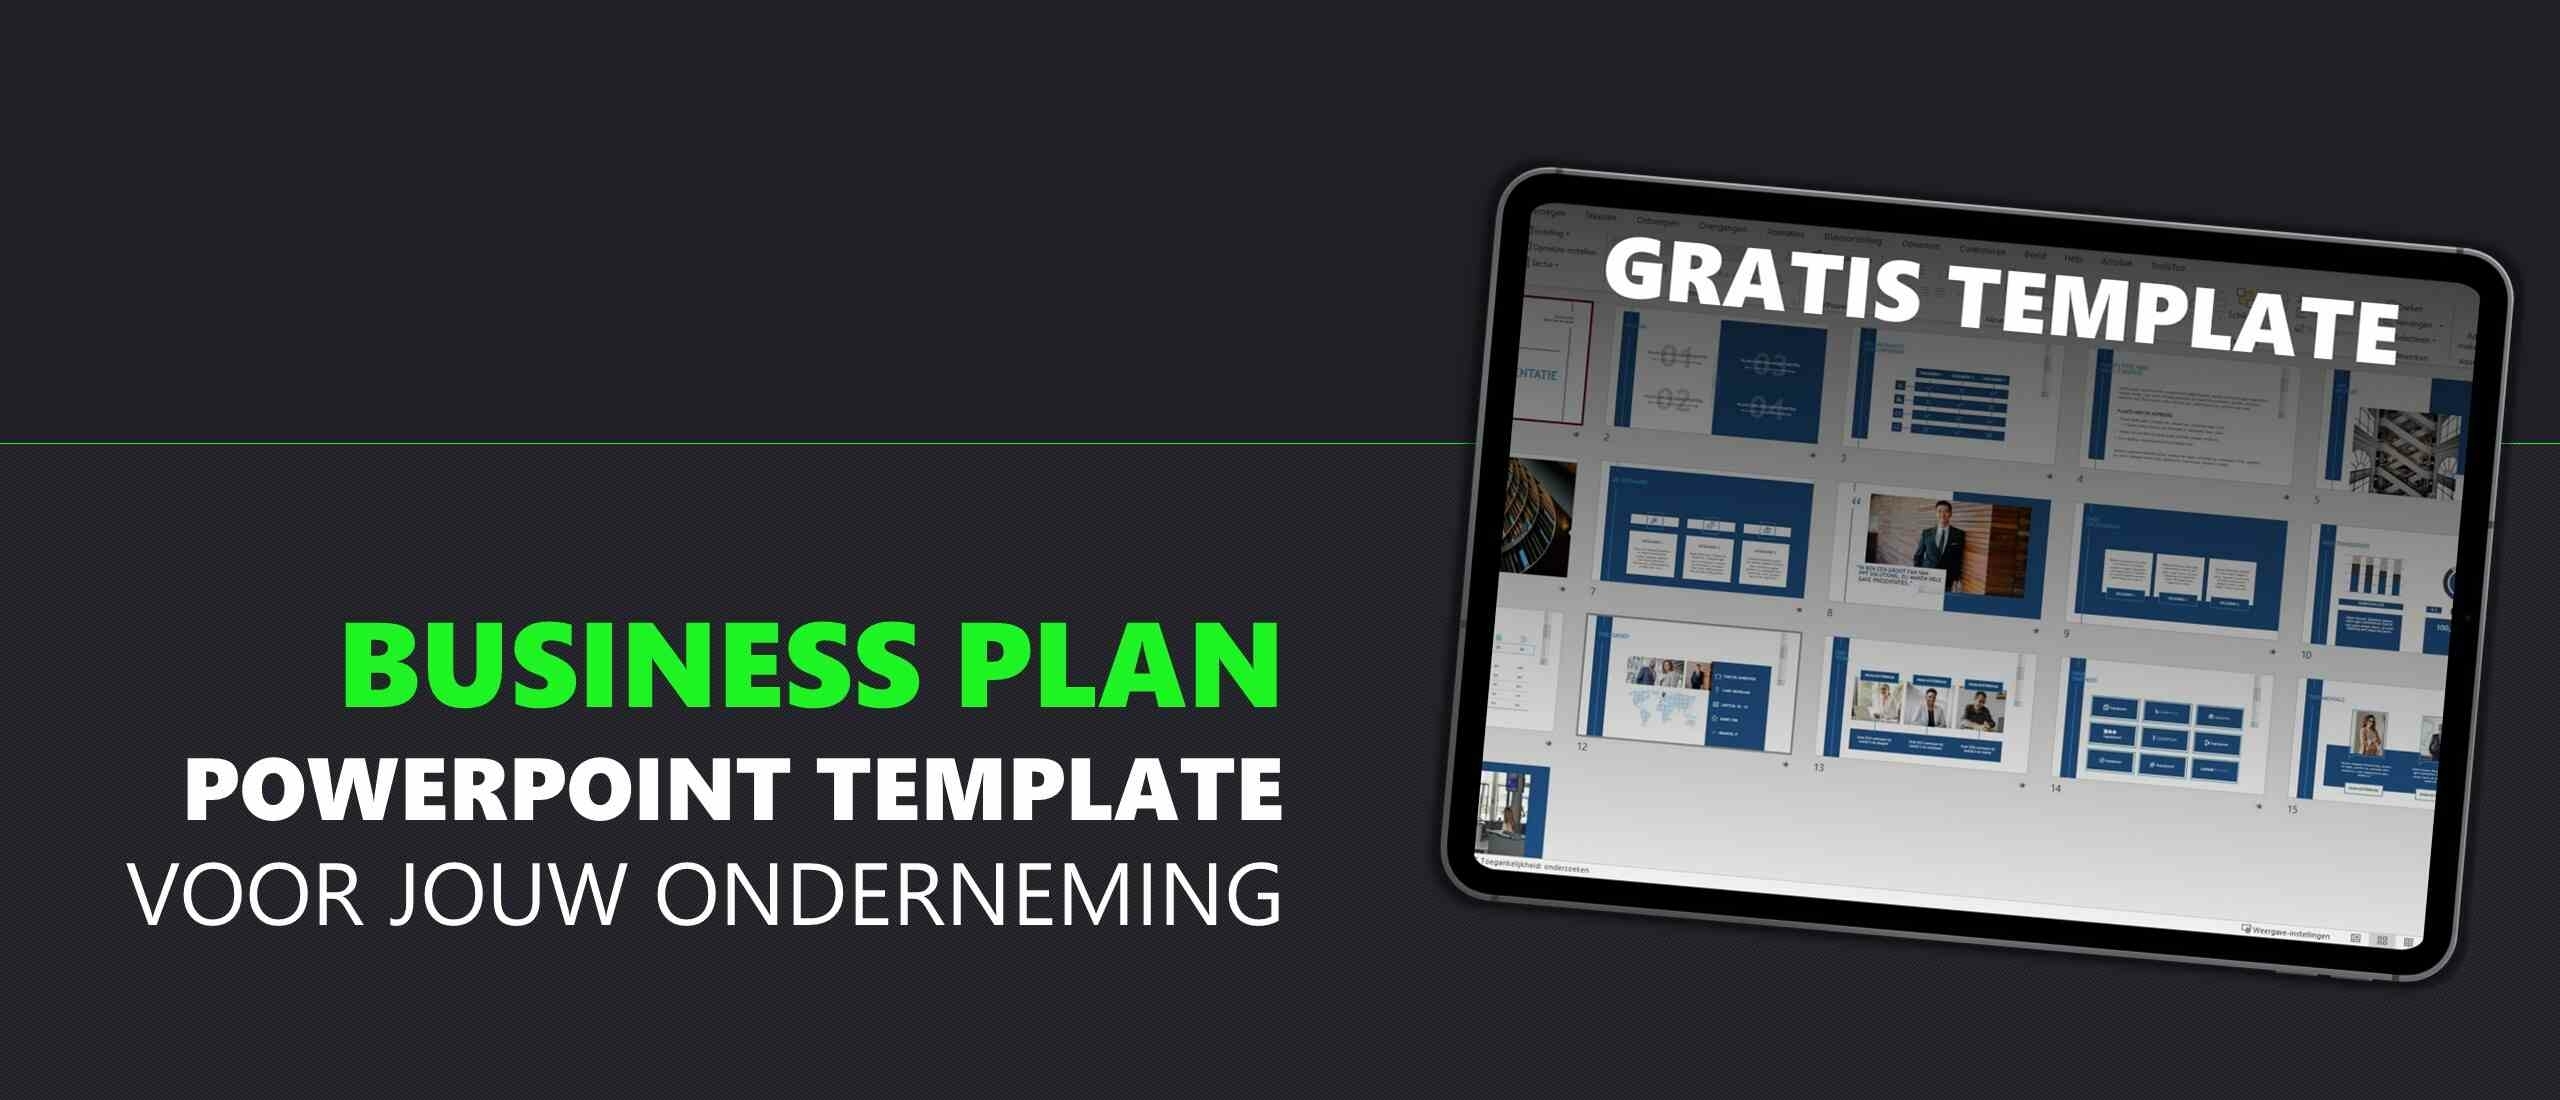 Business Plan PowerPoint template voor jouw onderneming!